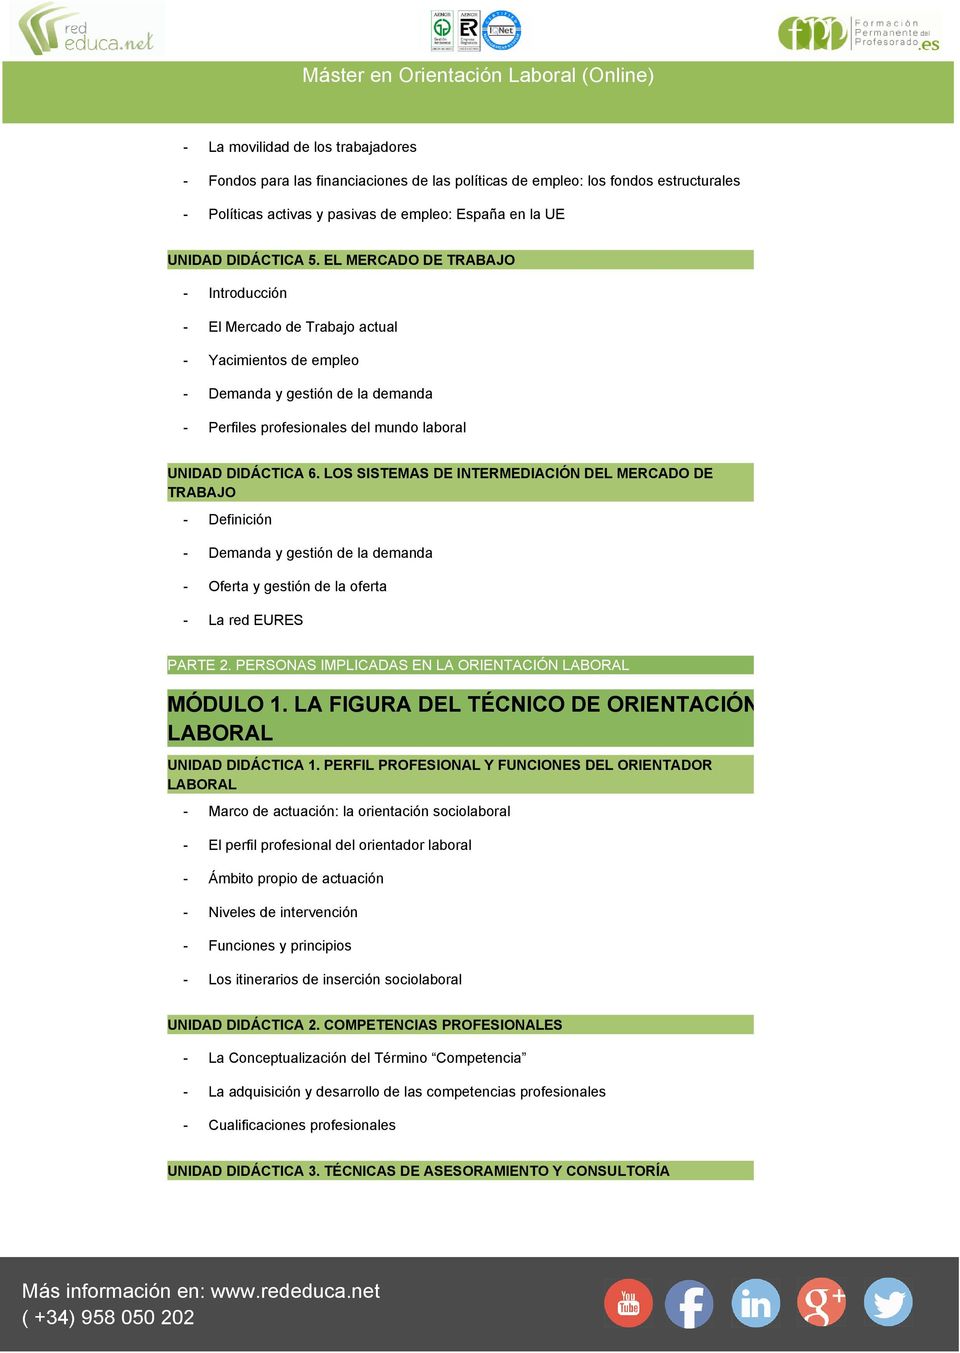 LOS SISTEMAS DE INTERMEDIACIÓN DEL MERCADO DE TRABAJO - Definición - Demanda y gestión de la demanda - Oferta y gestión de la oferta - La red EURES PARTE 2.